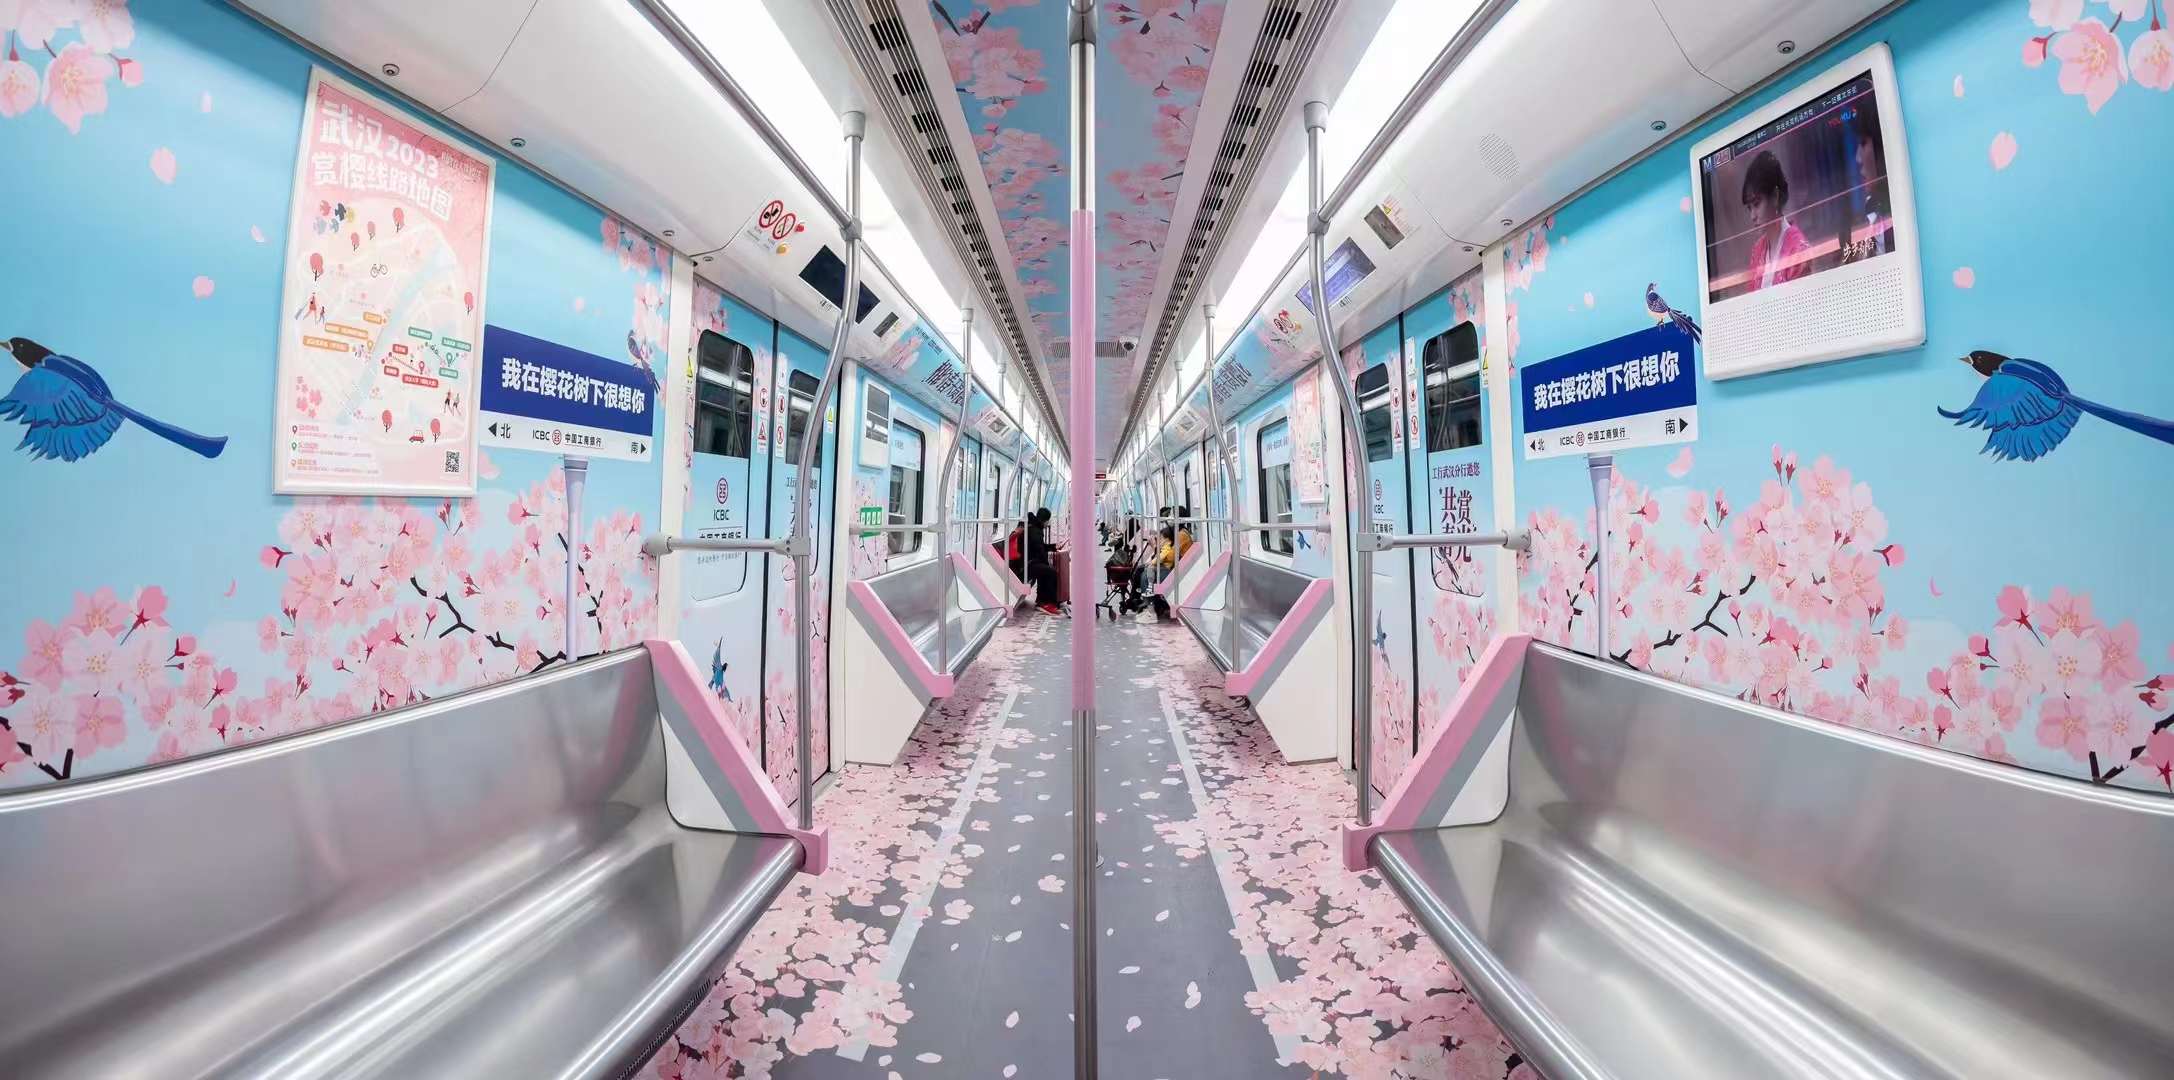 深圳地铁广告站厅出现VR广告